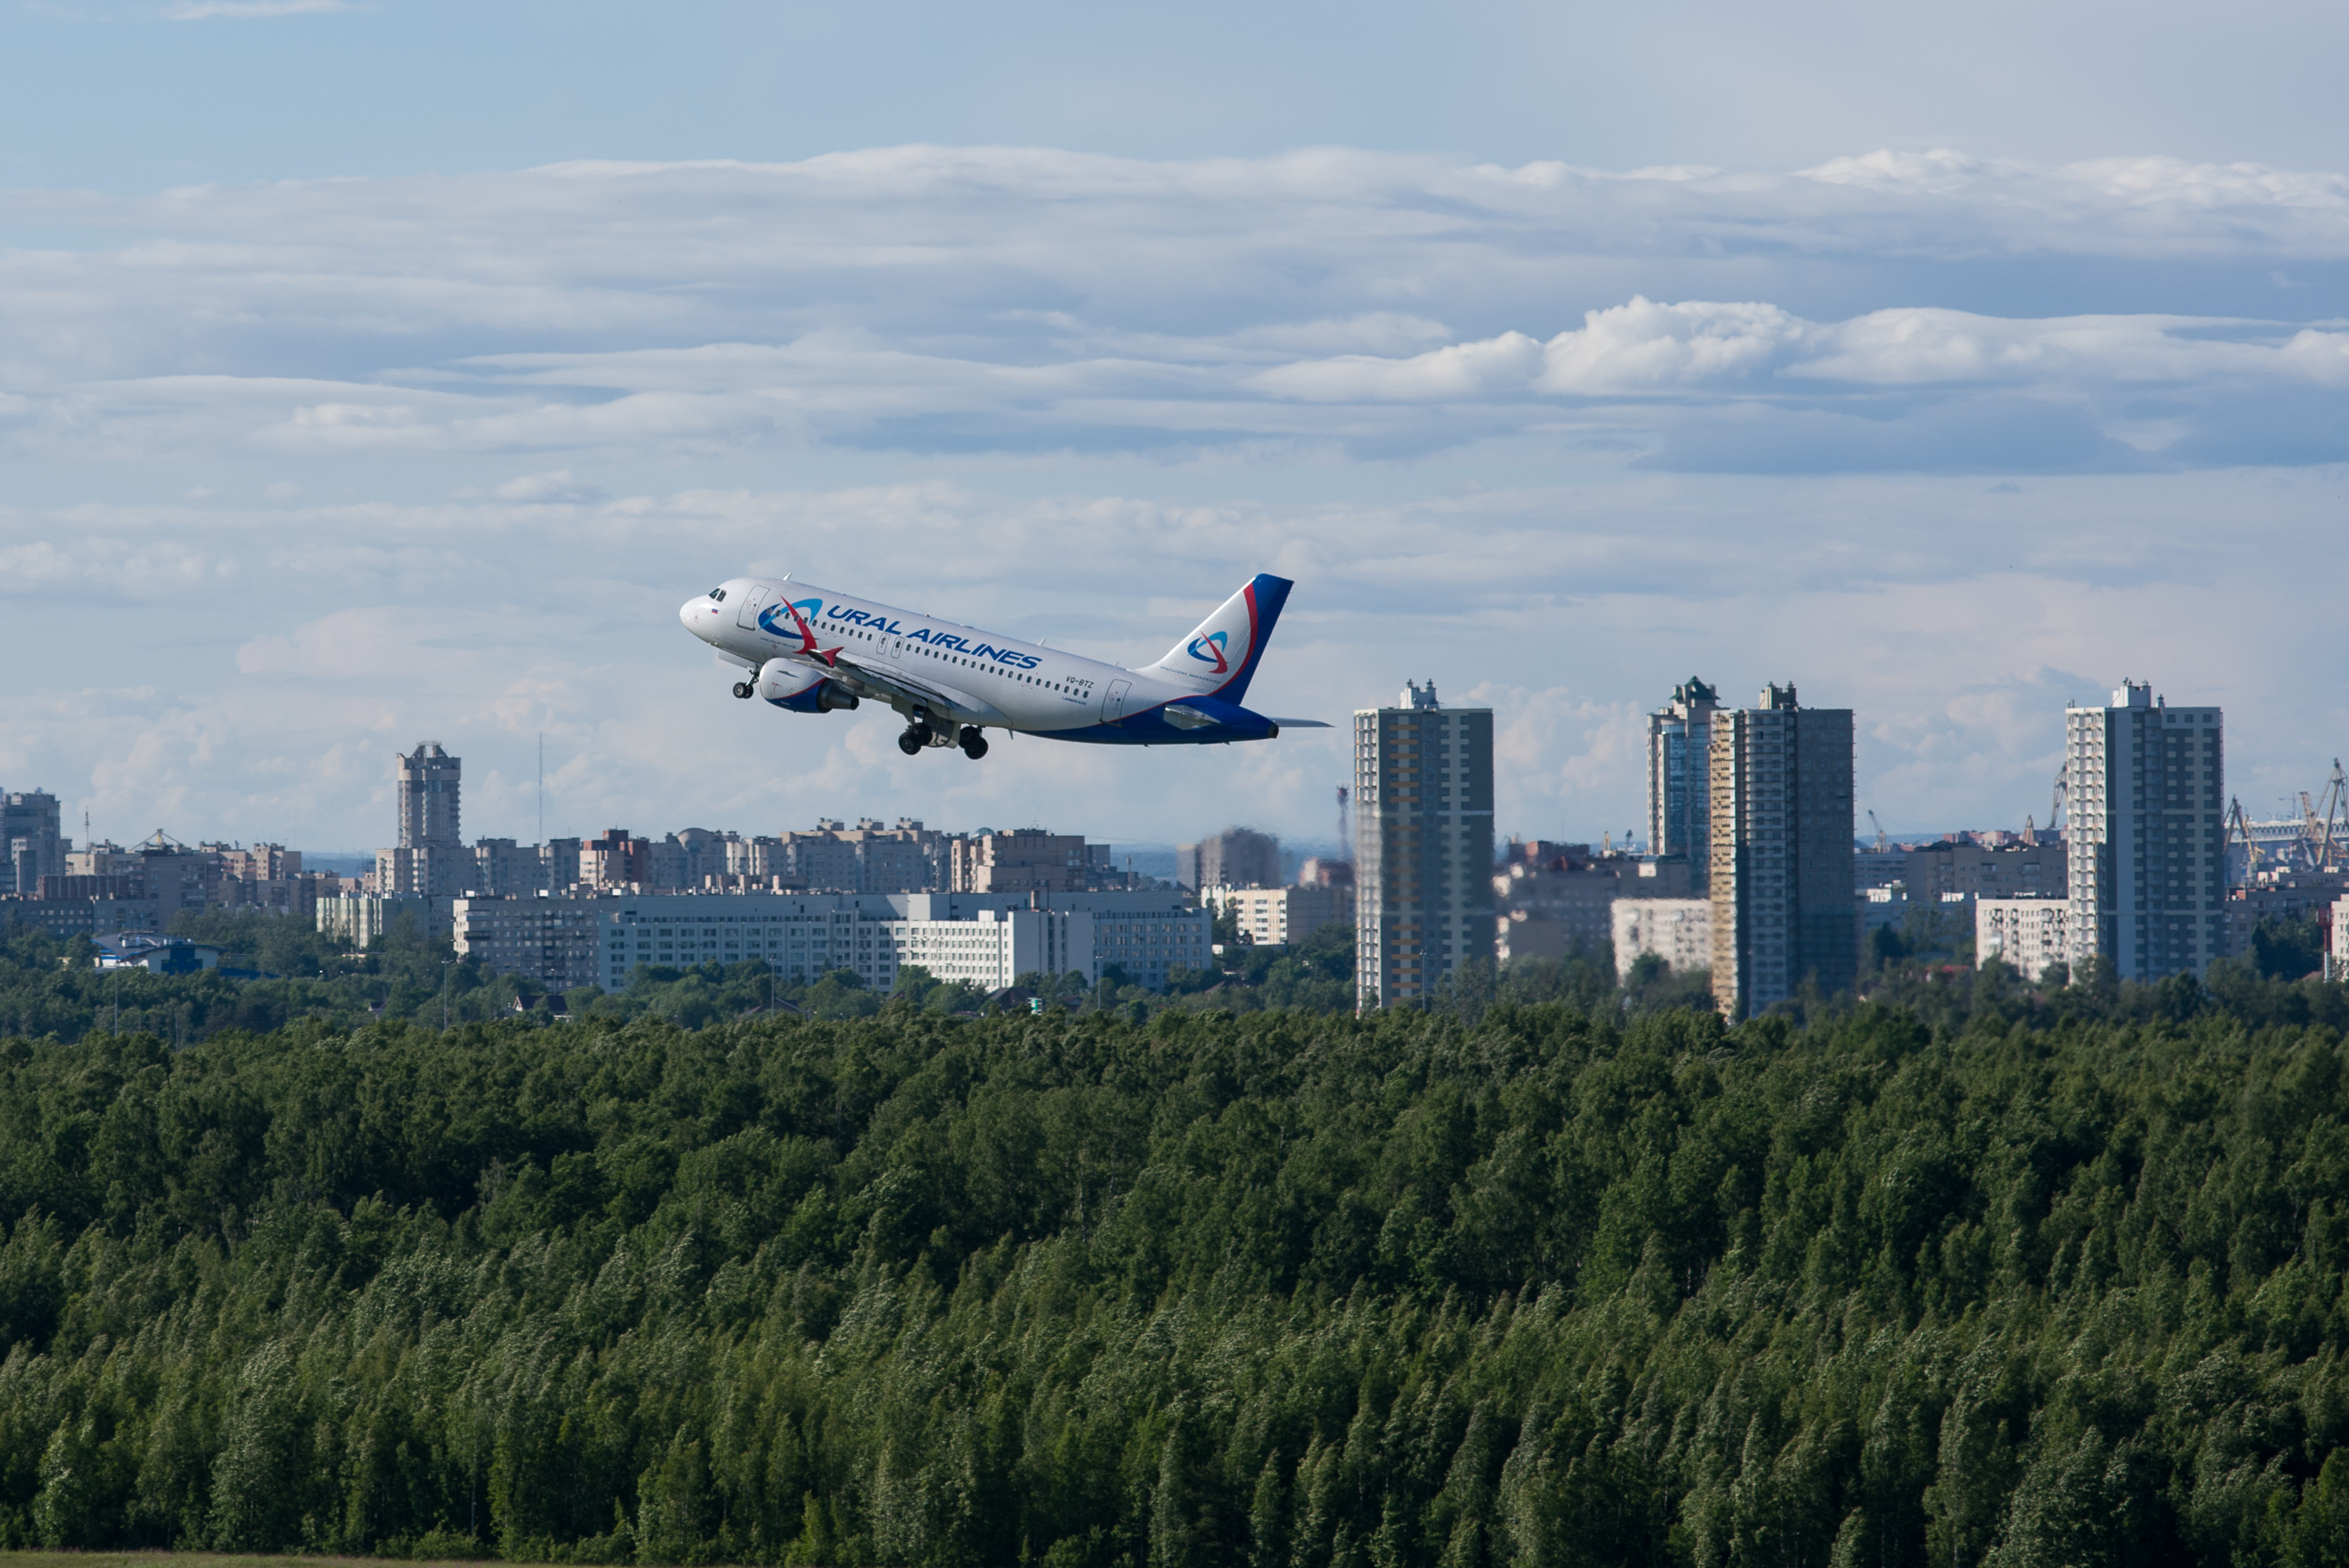 Уральские авиалинии будут выполнять еженедельные рейсы из Пулково на Тенерифе